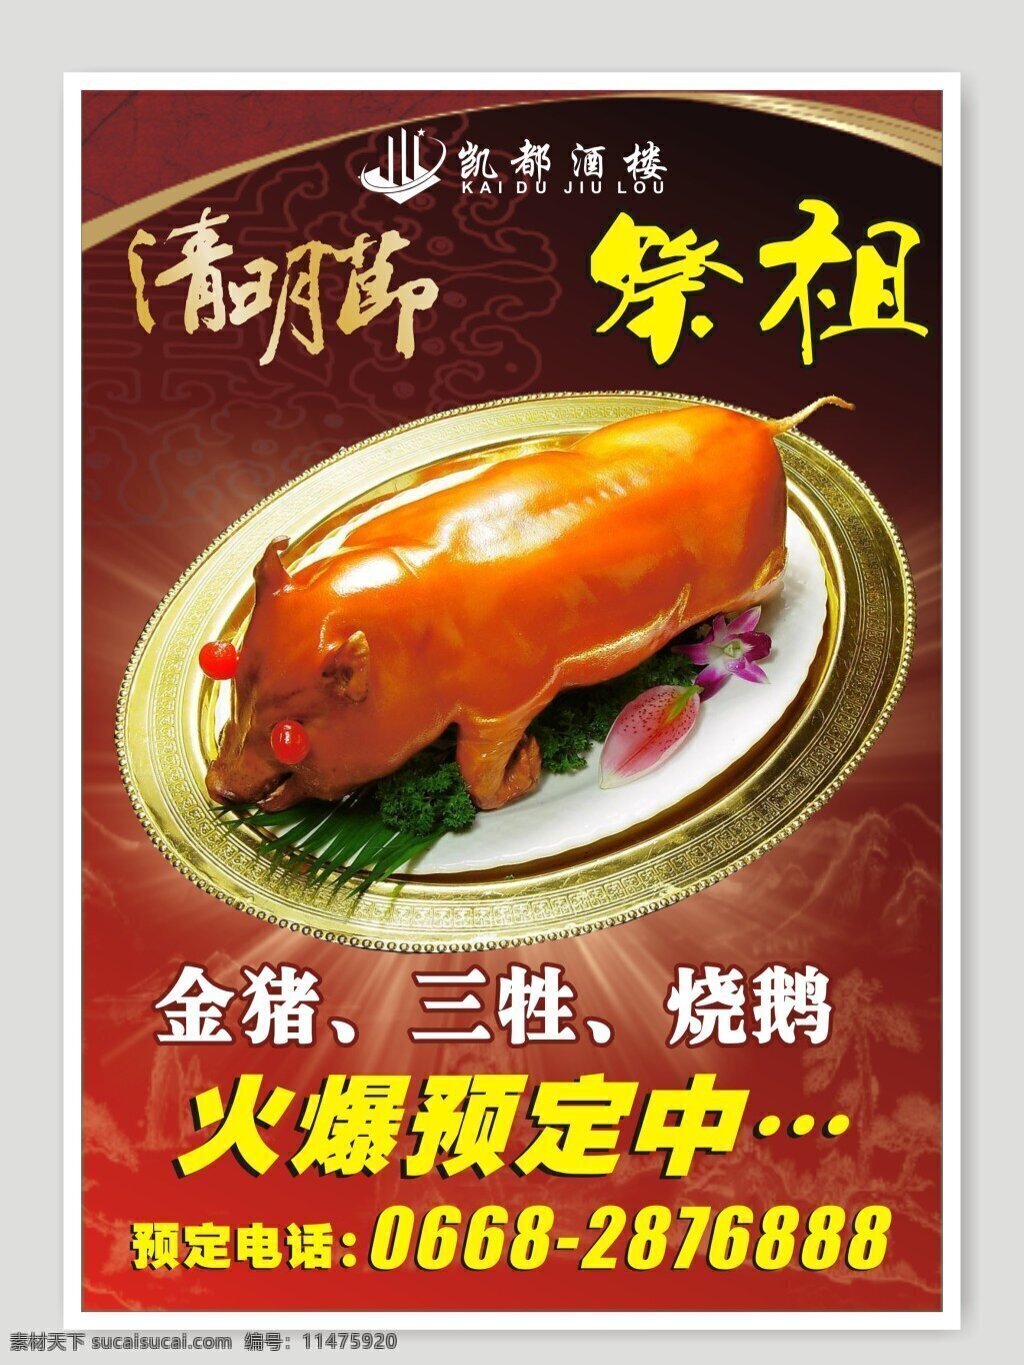 烧猪水牌 清明祭祖 烧猪海报 清明 中国传统 传统文化 金猪 三牲 凯都酒楼 酒楼水牌